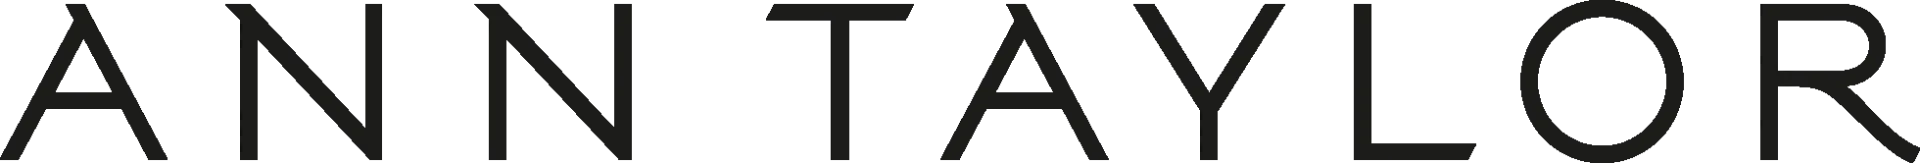 ANN TAYLOR logo